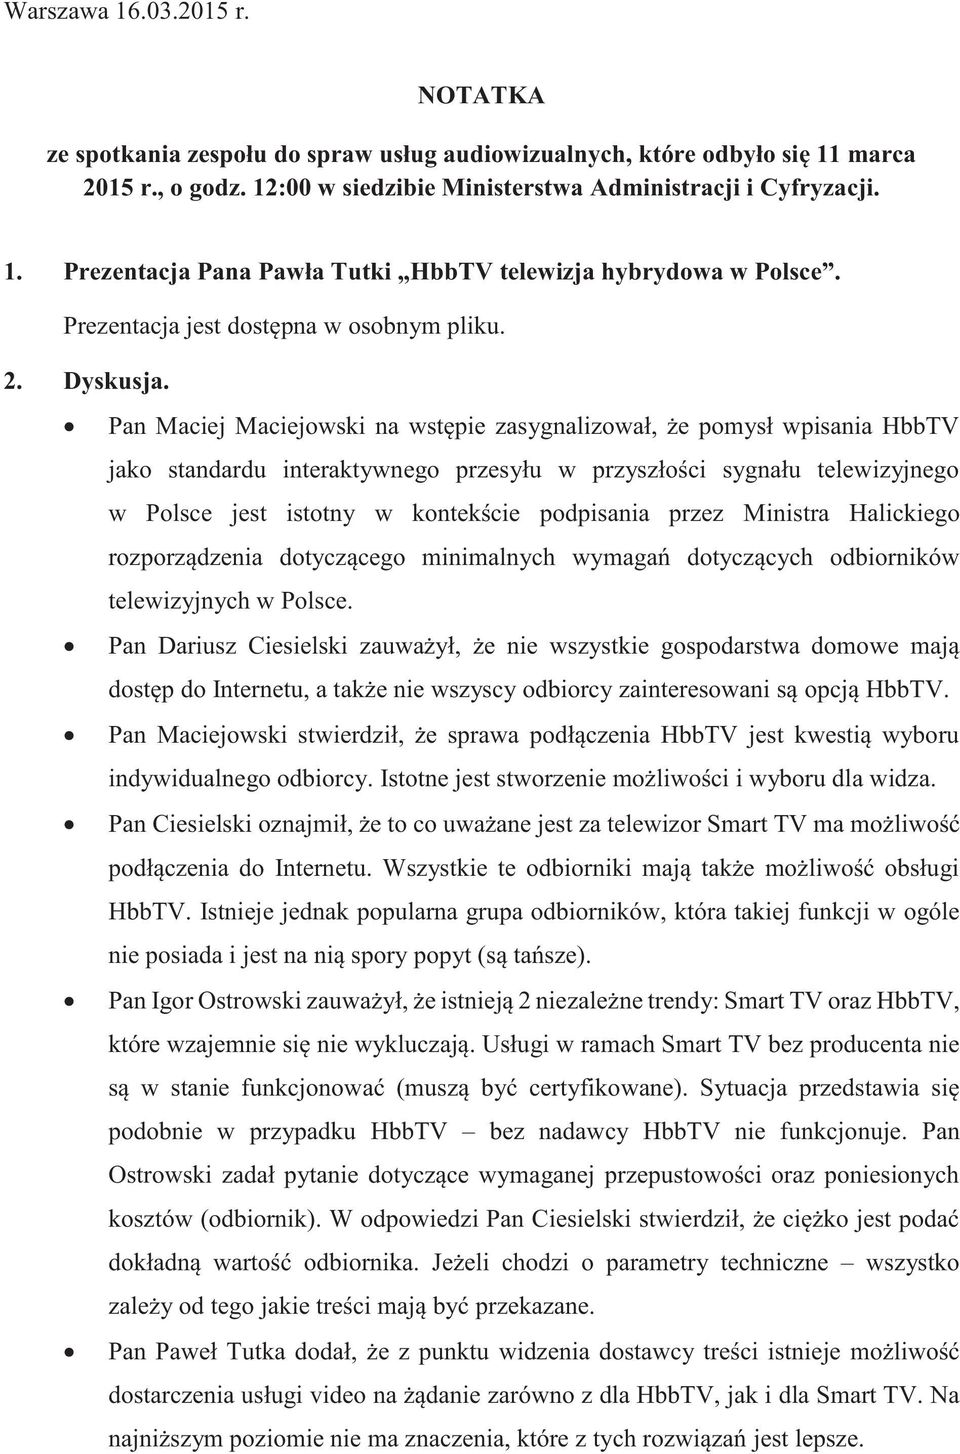 Pan Maciej Maciejowski na wstępie zasygnalizował, że pomysł wpisania HbbTV jako standardu interaktywnego przesyłu w przyszłości sygnału telewizyjnego w Polsce jest istotny w kontekście podpisania